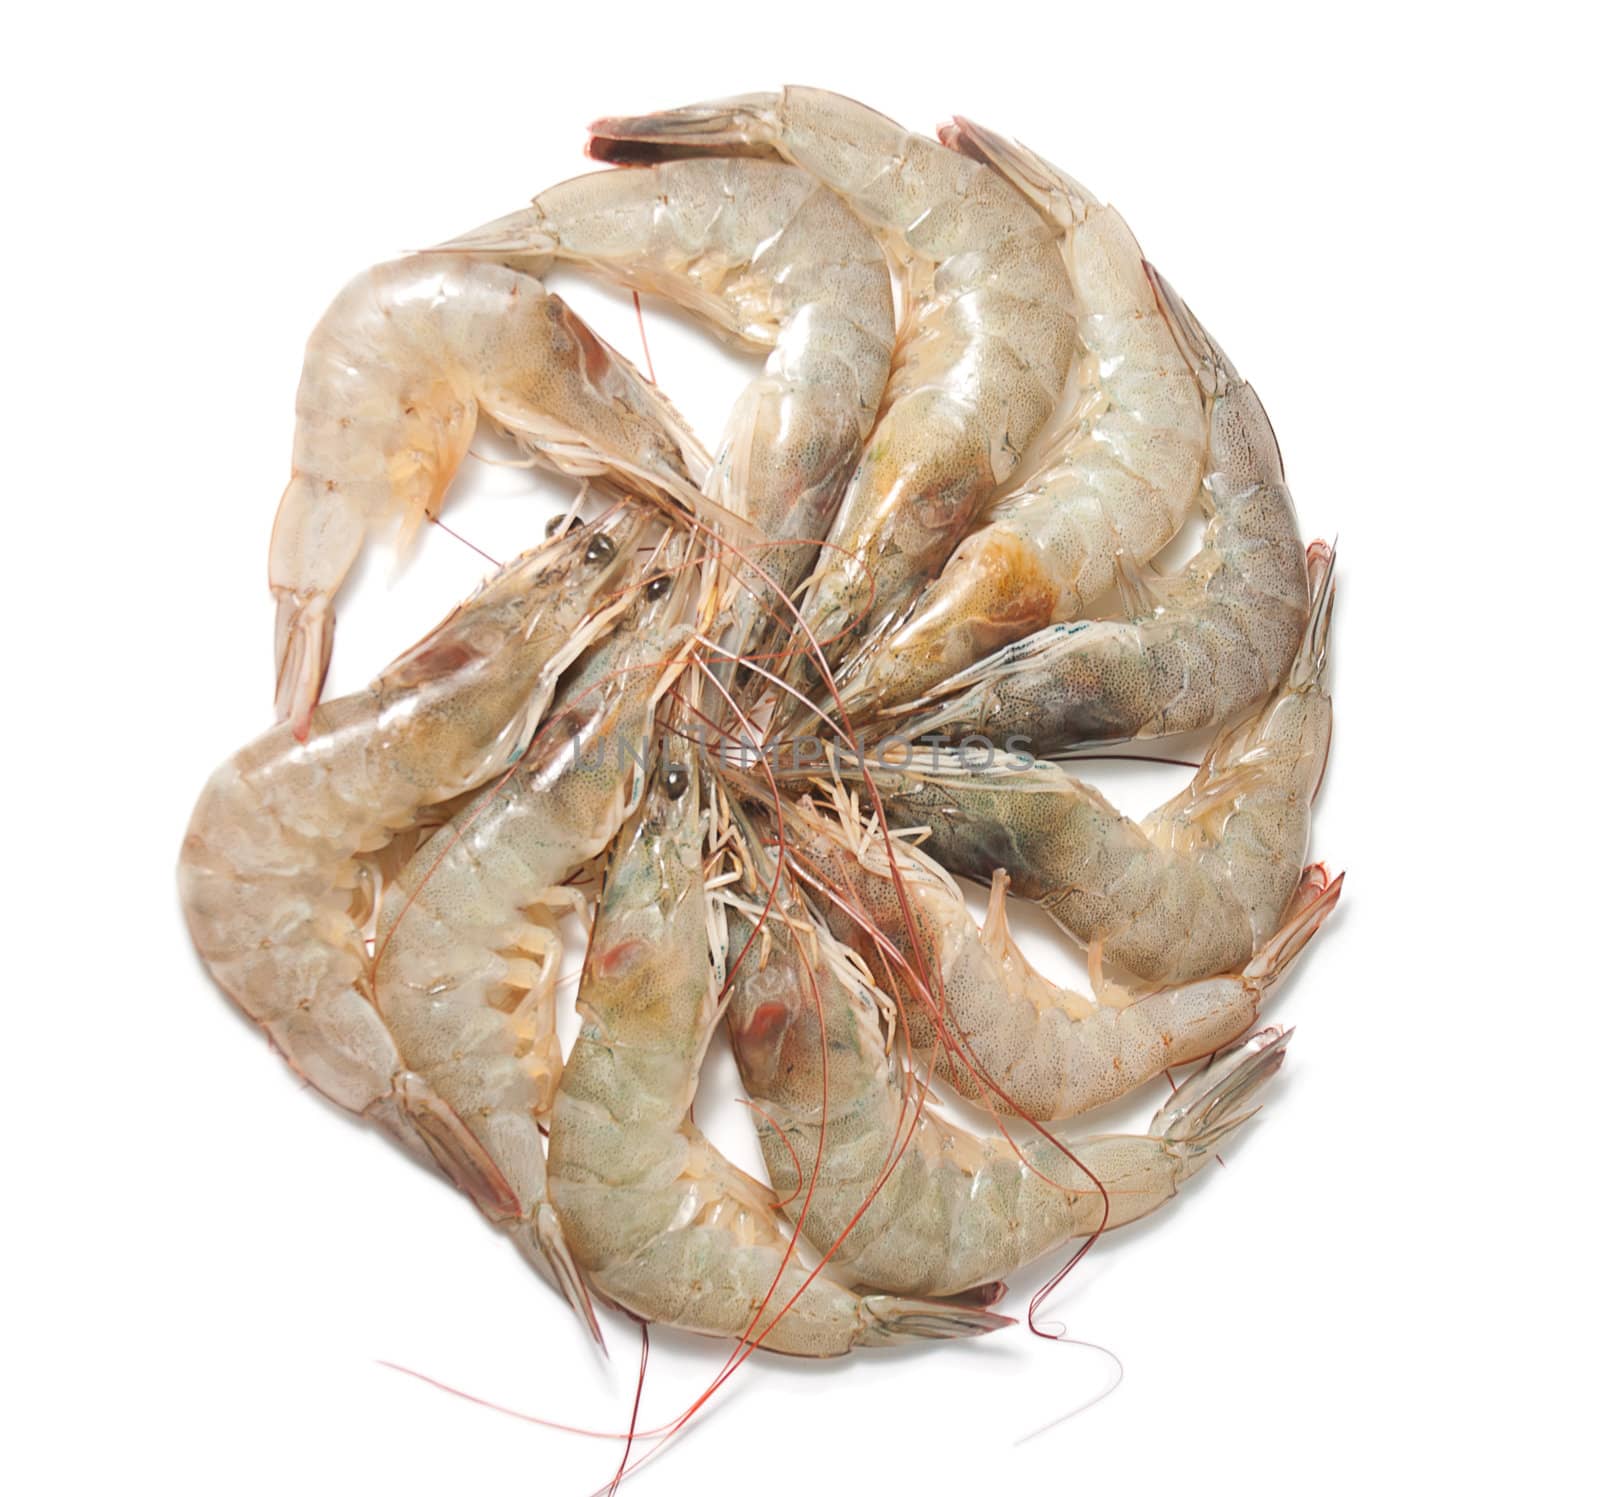 Group of shrimp isolated on white background